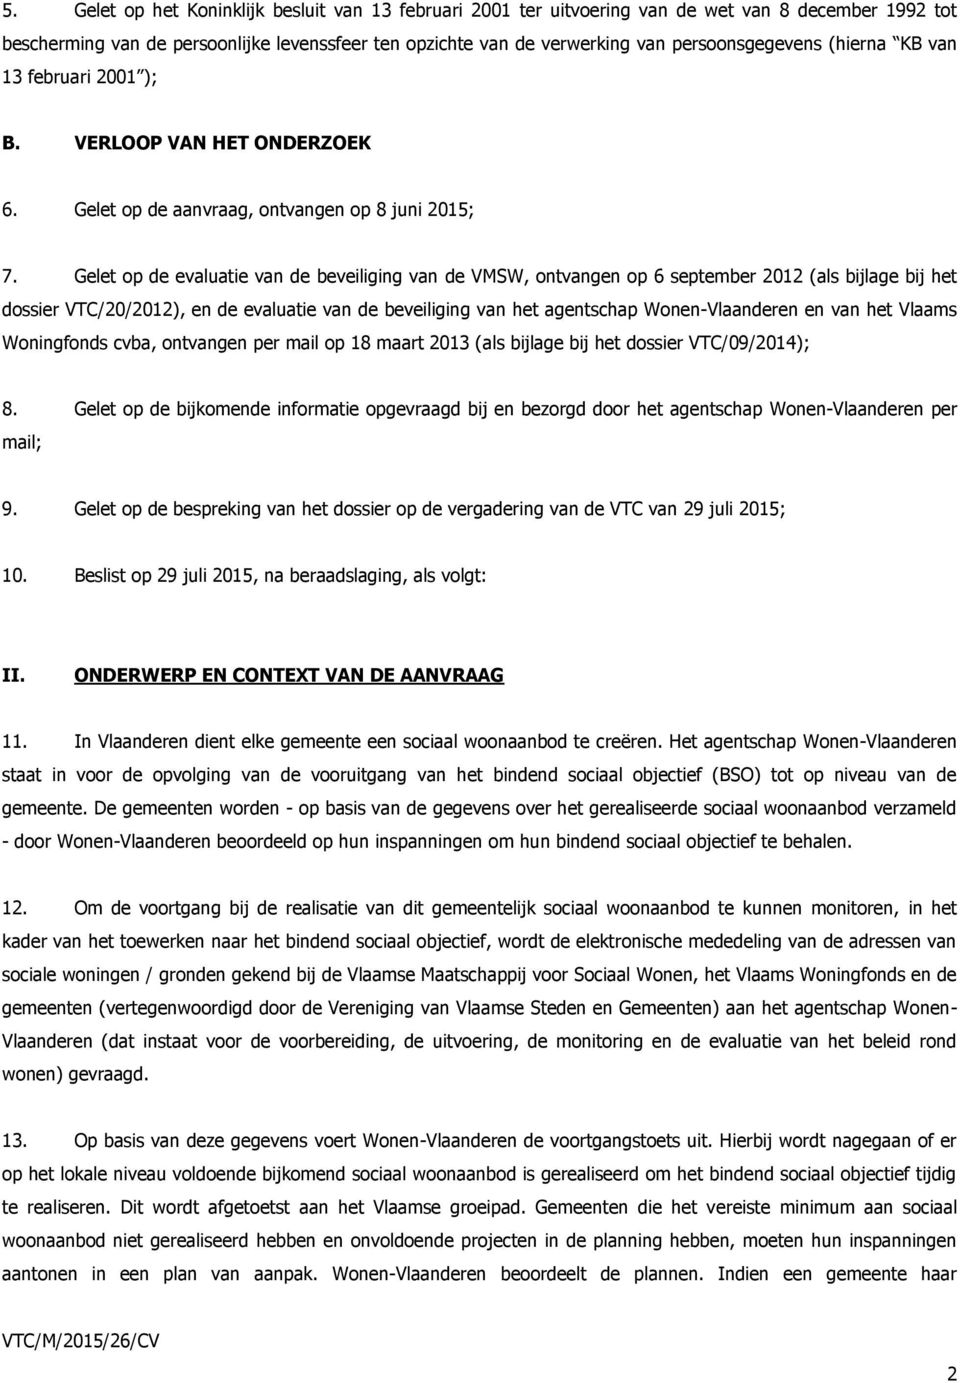 Gelet op de evaluatie van de beveiliging van de VMSW, ontvangen op 6 september 2012 (als bijlage bij het dossier VTC/20/2012), en de evaluatie van de beveiliging van het agentschap Wonen-Vlaanderen